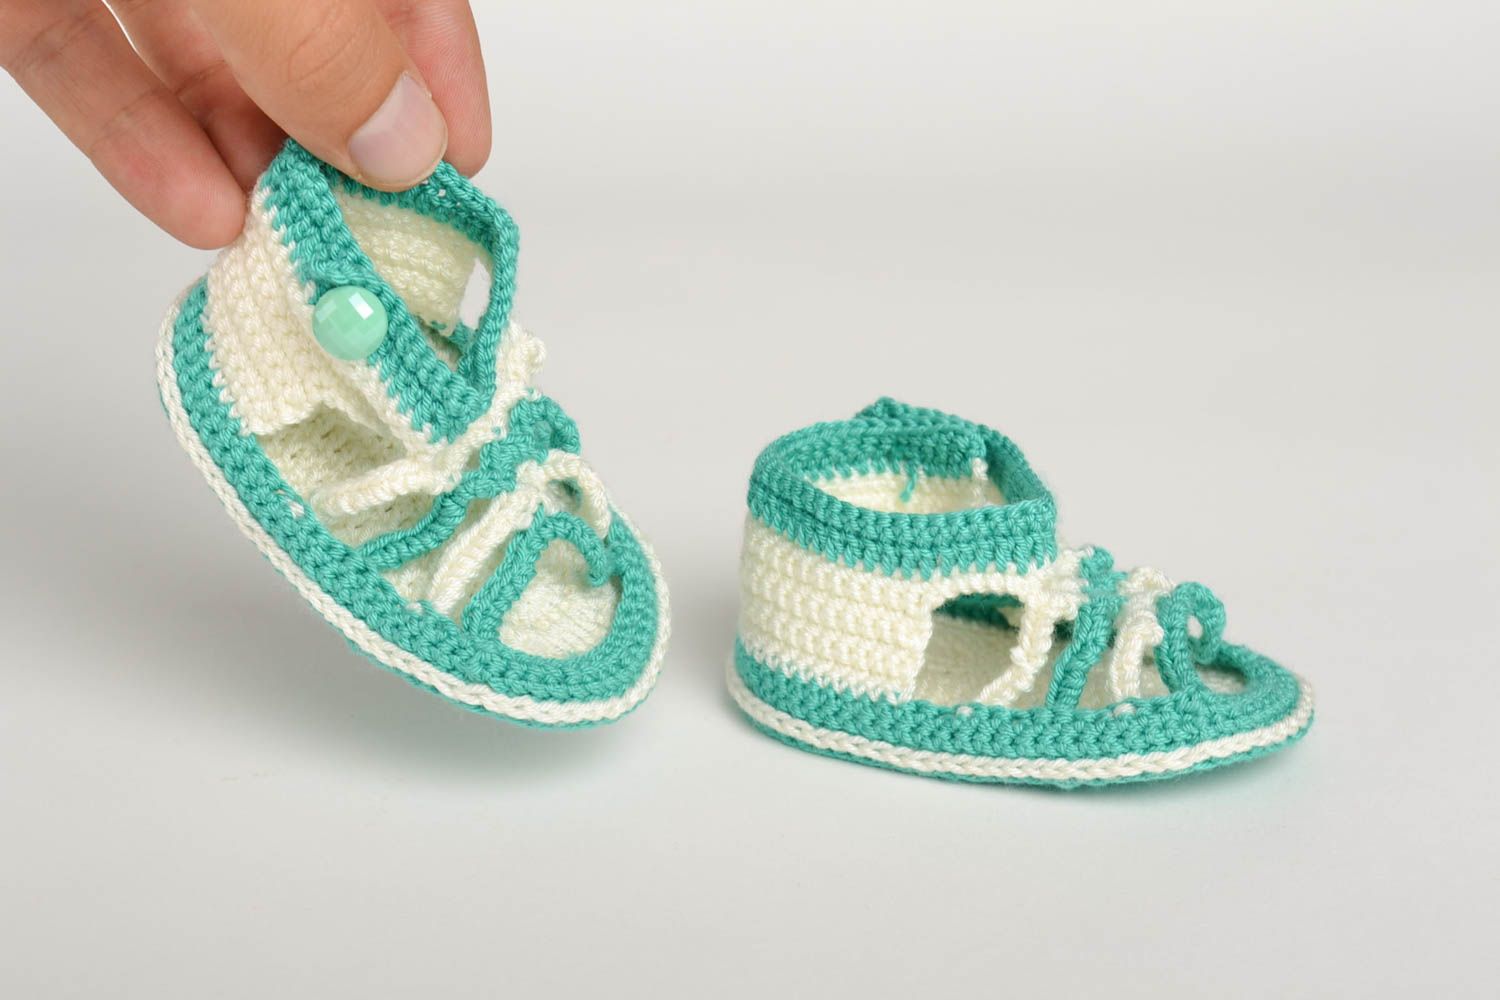 Chaussons bébé fait main tricotés au crochet blanc-turquoise Chaussures bébé photo 3